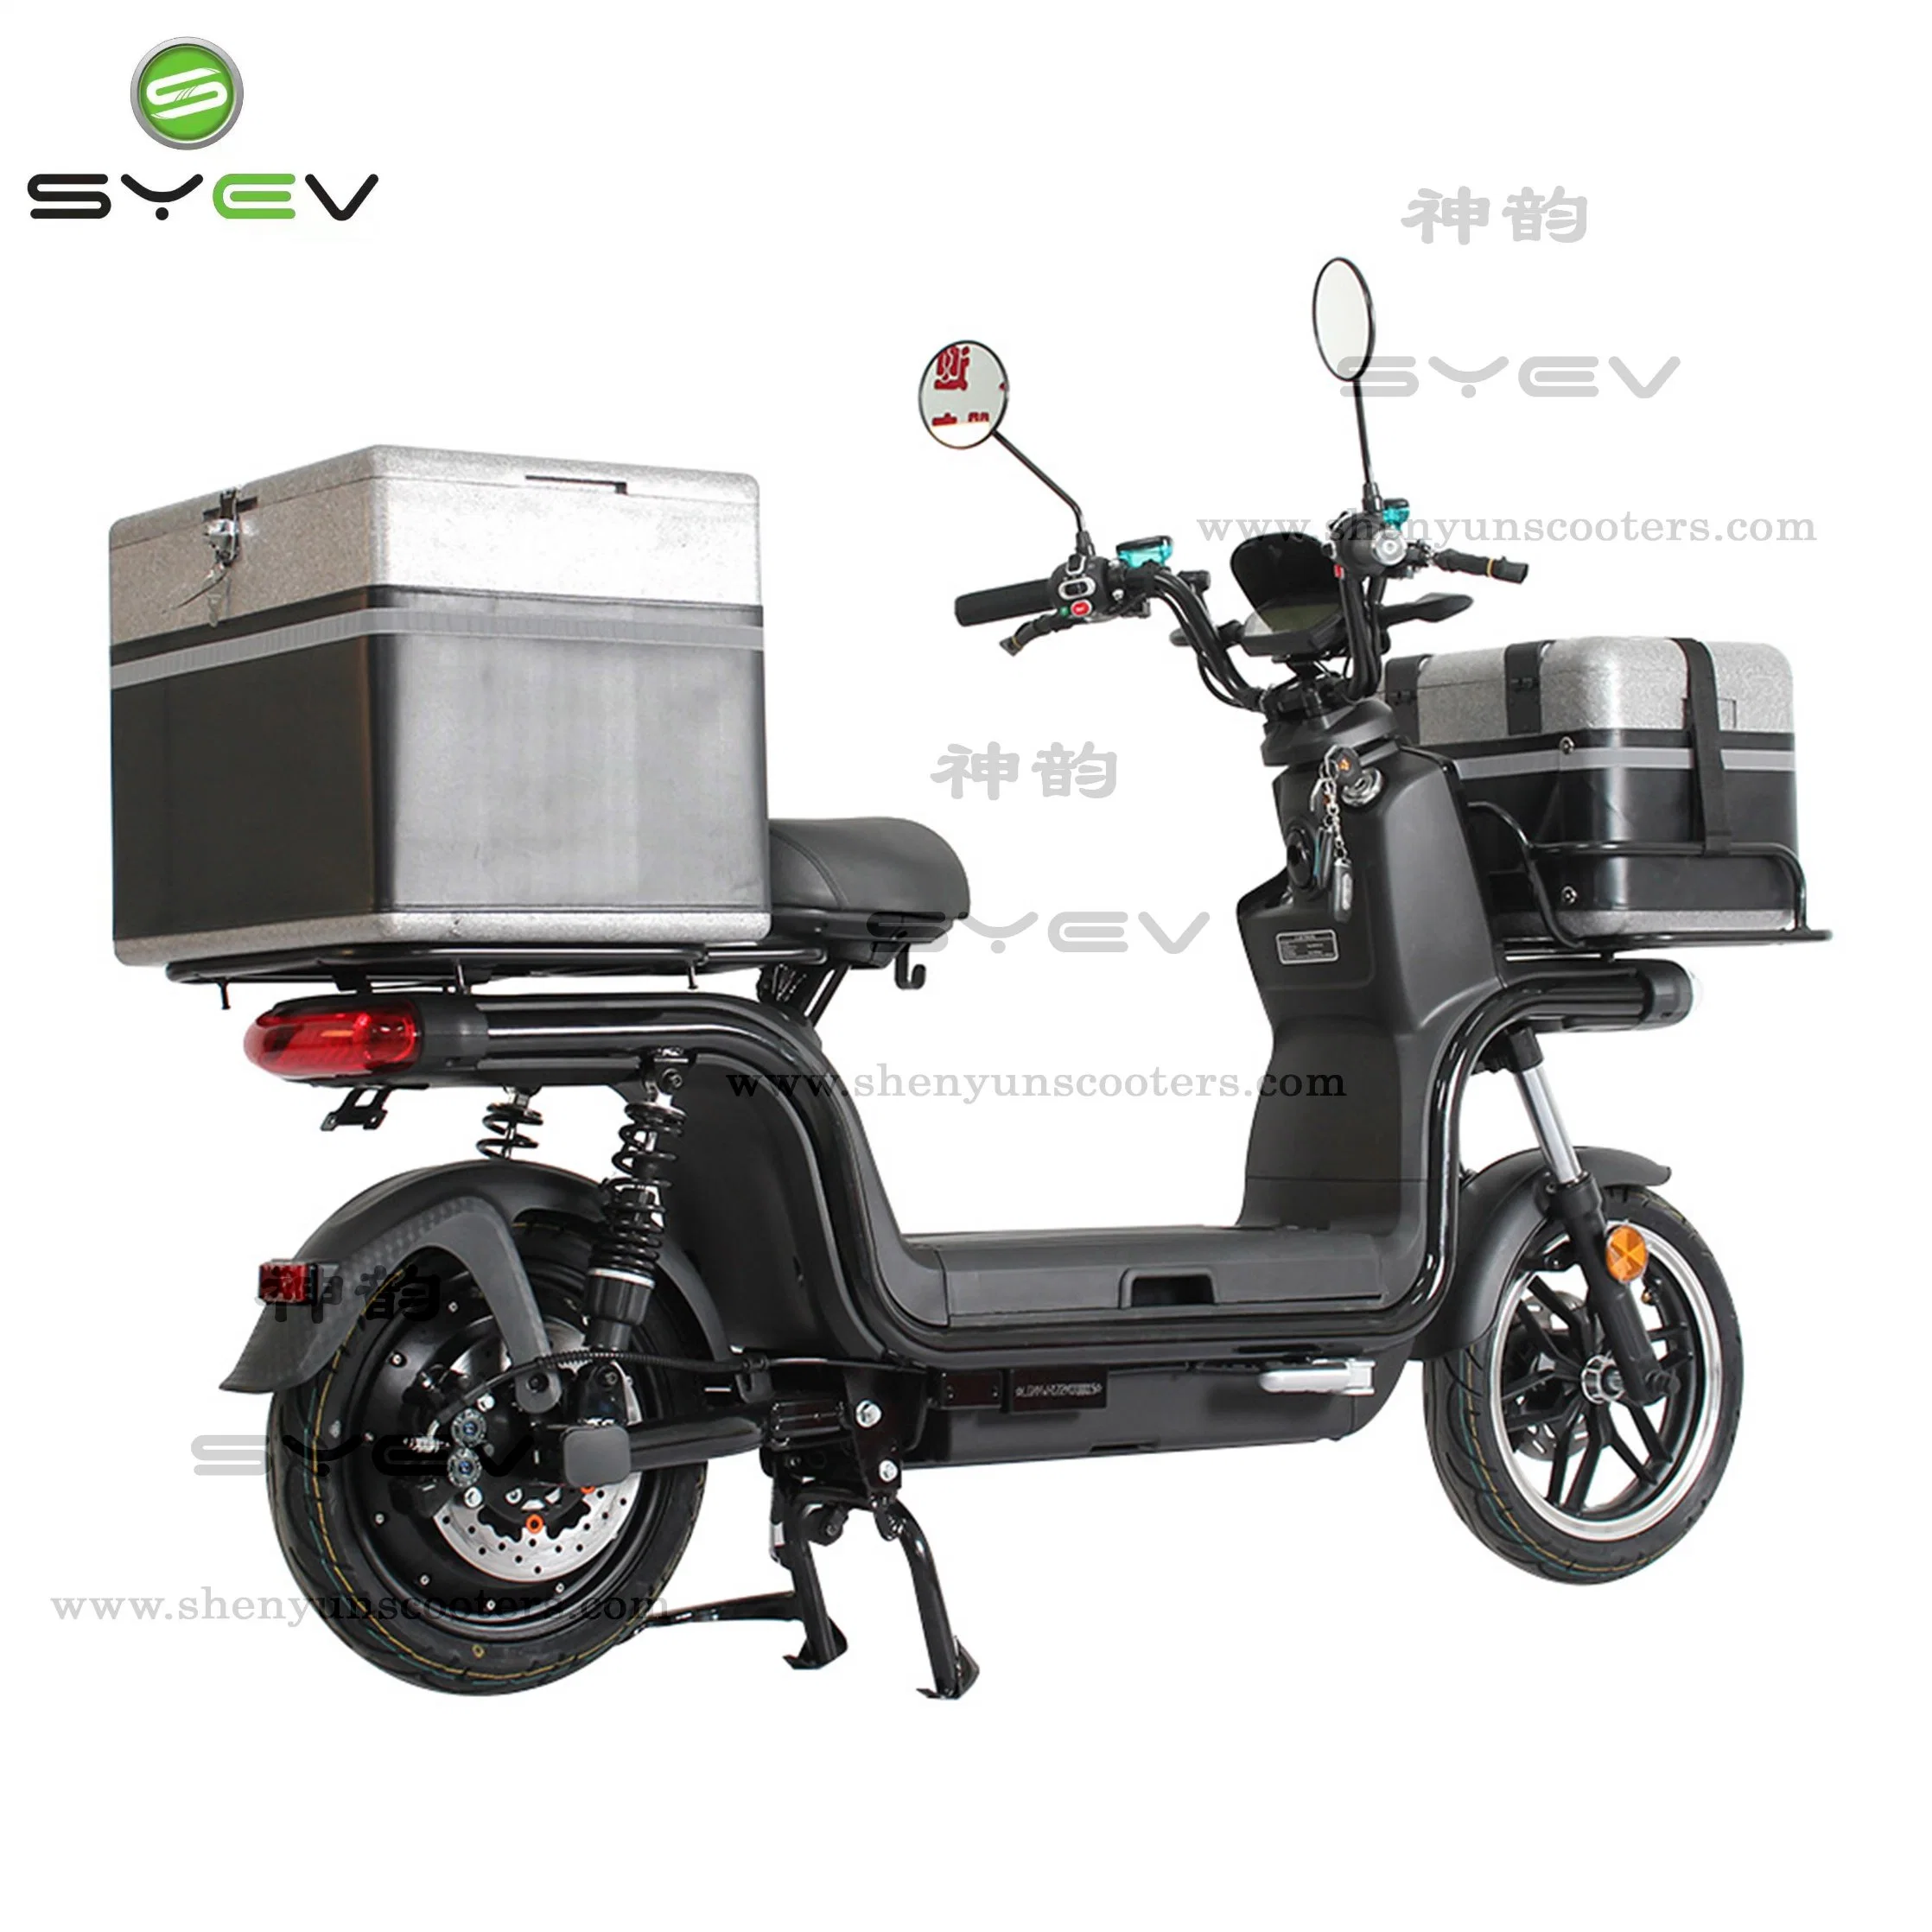 Com certificado CEE, motociclo/bicicleta com entrega de motor de 1200 W com caixa de entrega bateria de lítio de 6026 ah